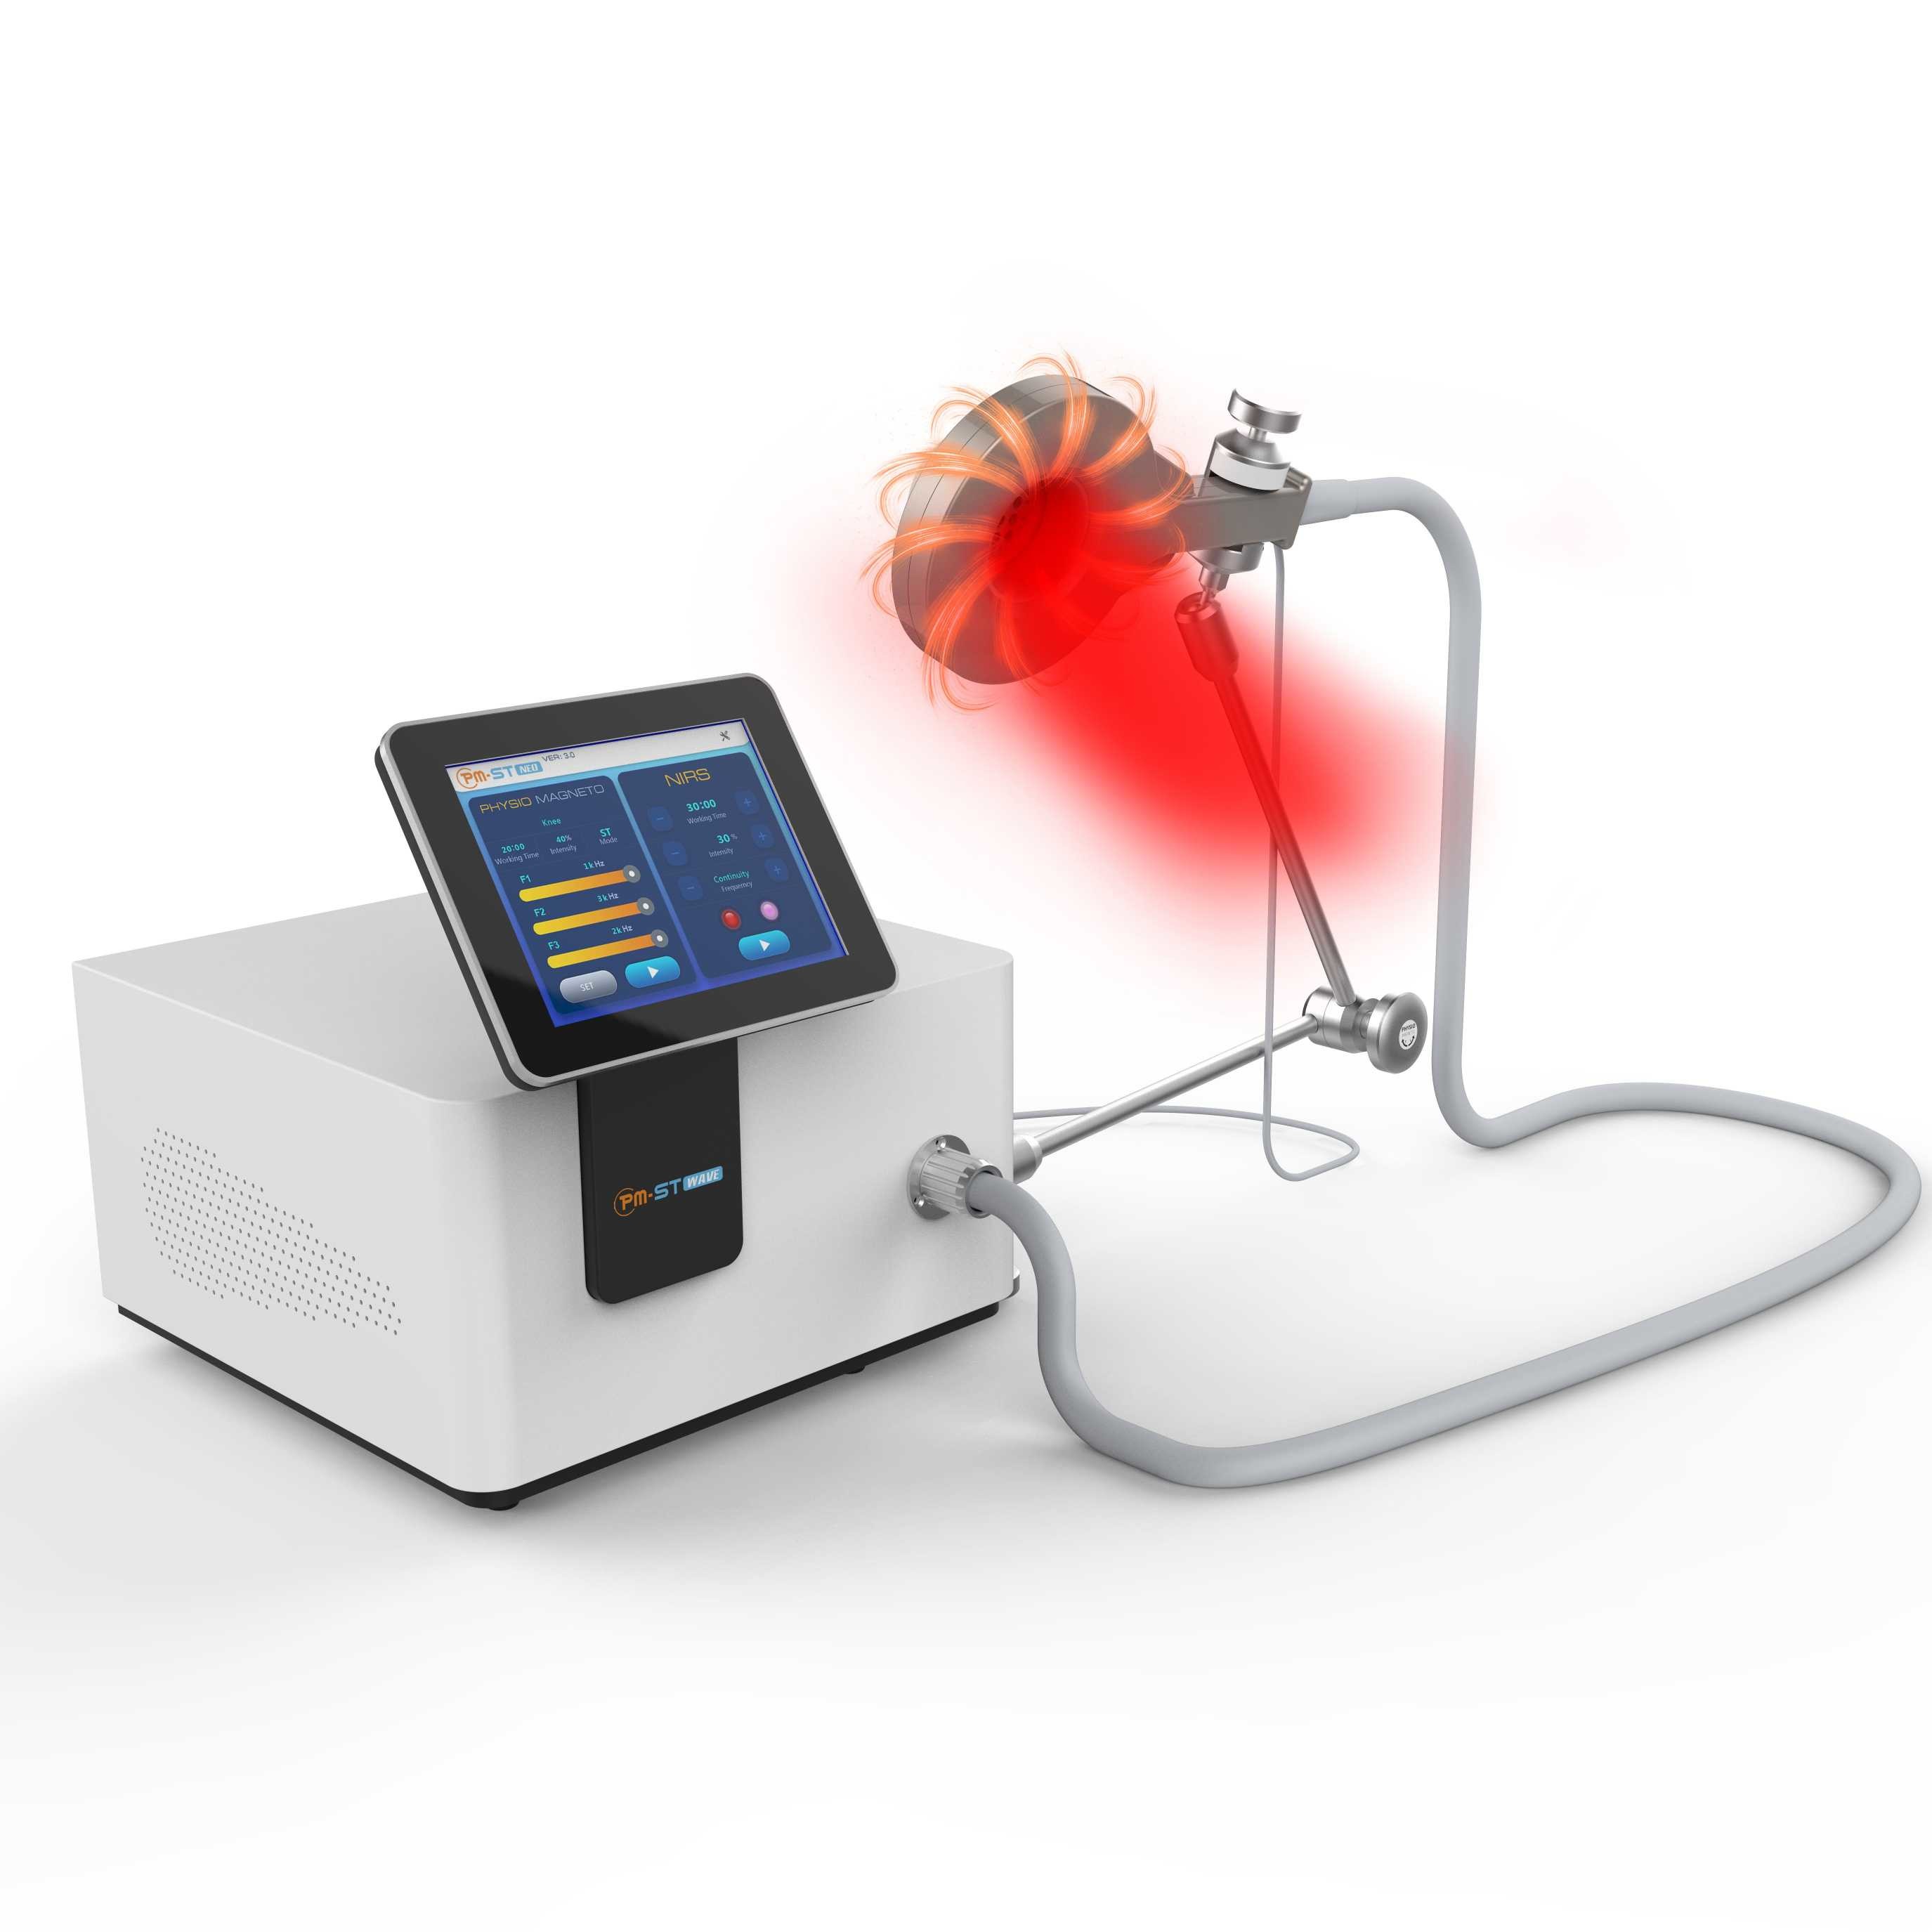 físico máquina da terapia do magneto 130khz perto dos dispositivos leves vermelhos frios da fisioterapia para o oxigênio do sangue